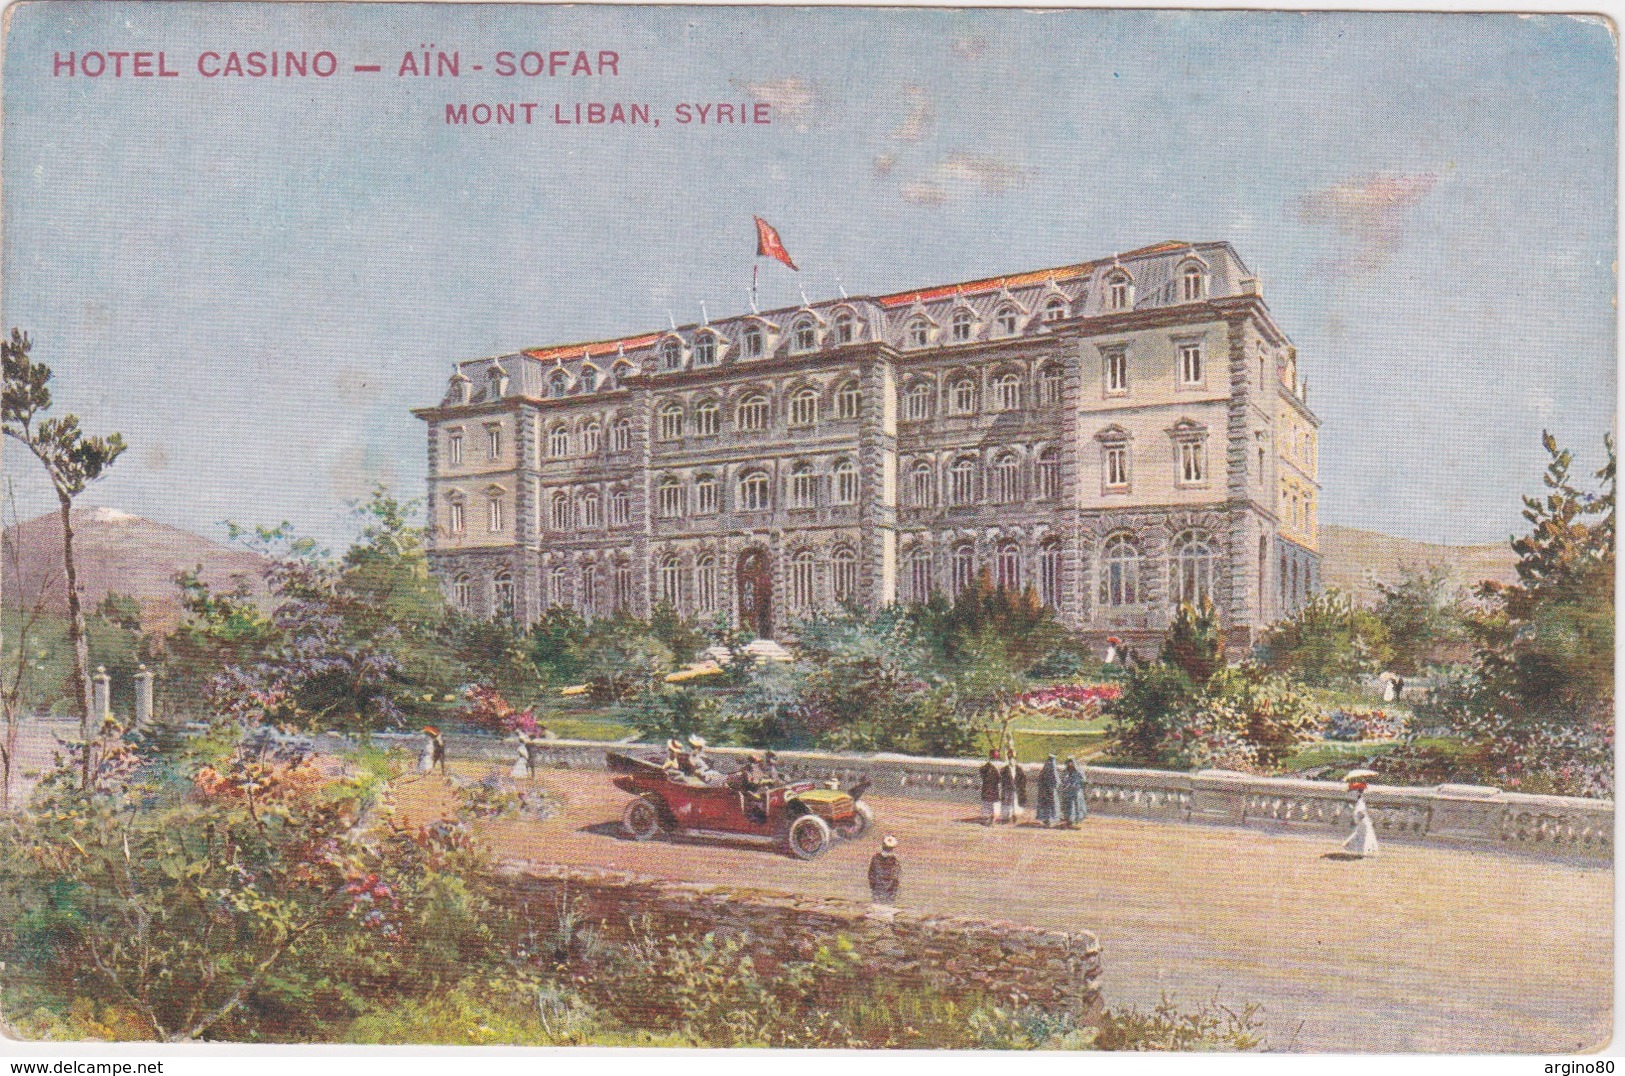 LEBANON MONT LIBAN SYRIE TURQUIE AUTRICHE 1909 POSTCARD CPA HOTEL CASINO AIN SOFAR EDIT. REISER - Liban